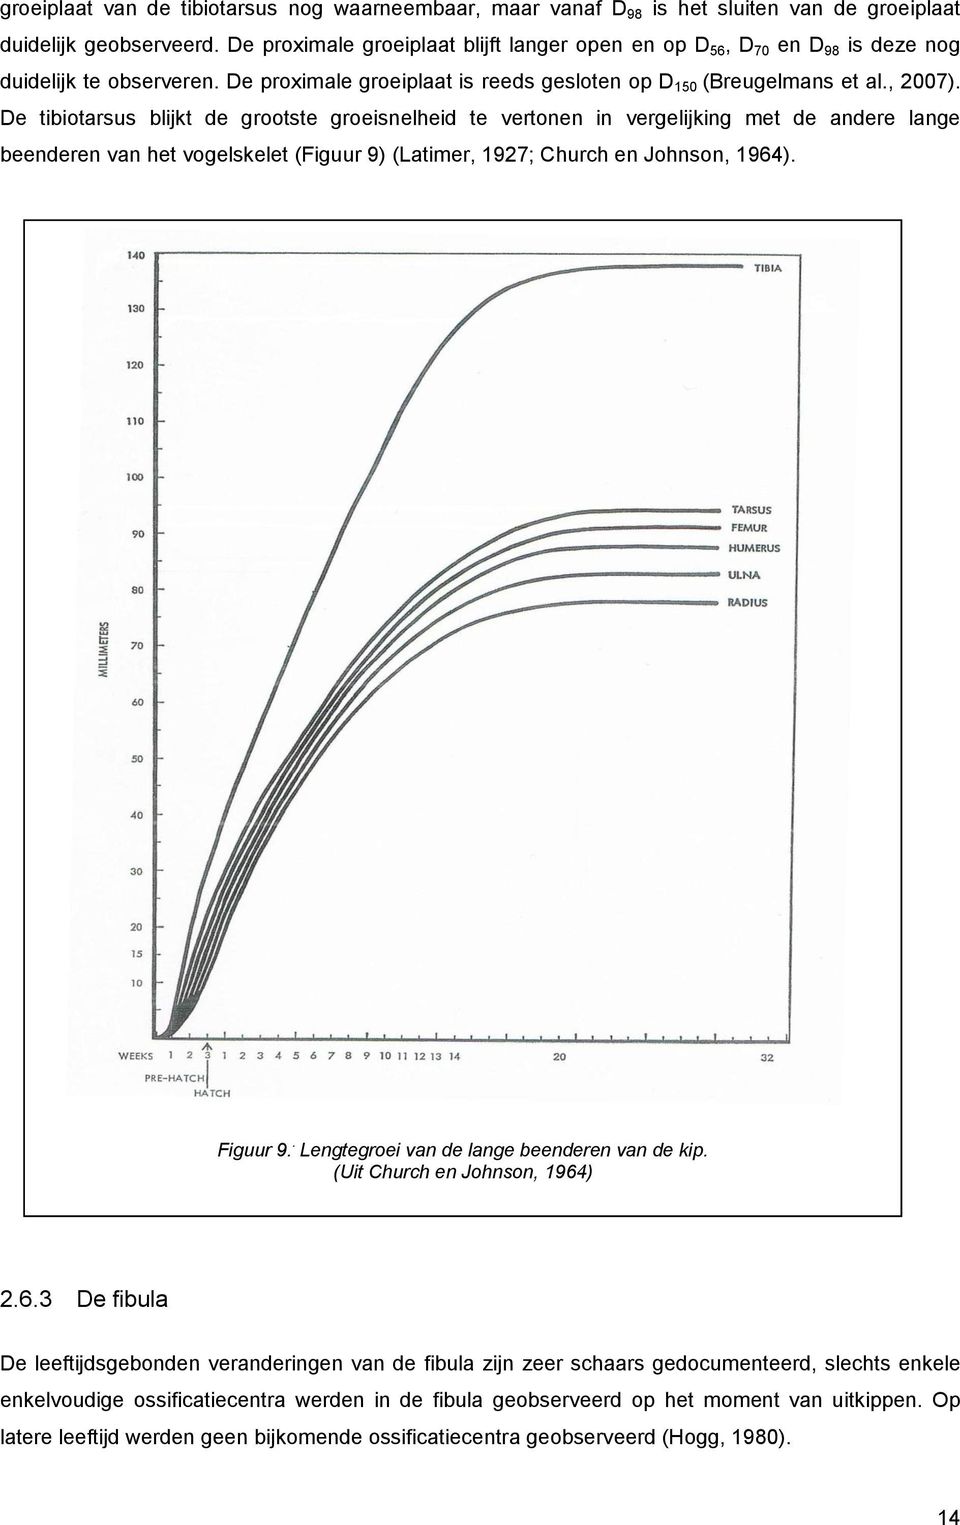 De tibiotarsus blijkt de grootste groeisnelheid te vertonen in vergelijking met de andere lange beenderen van het vogelskelet (Figuur 9) (Latimer, 1927; Church en Johnson, 1964). Figuur 9.